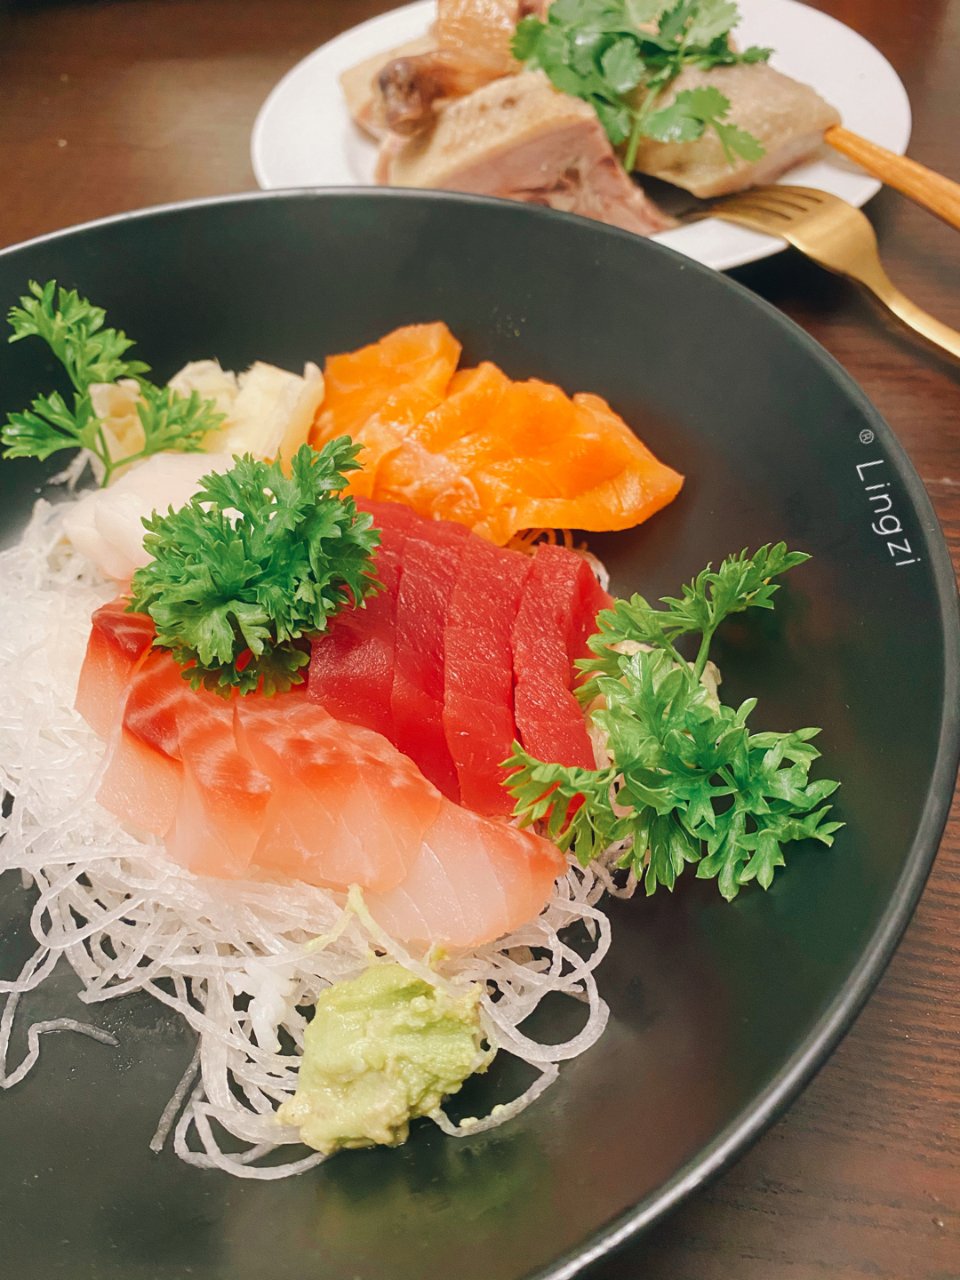 燃夏晚餐—在家吃sashimi刺身啦🌈...